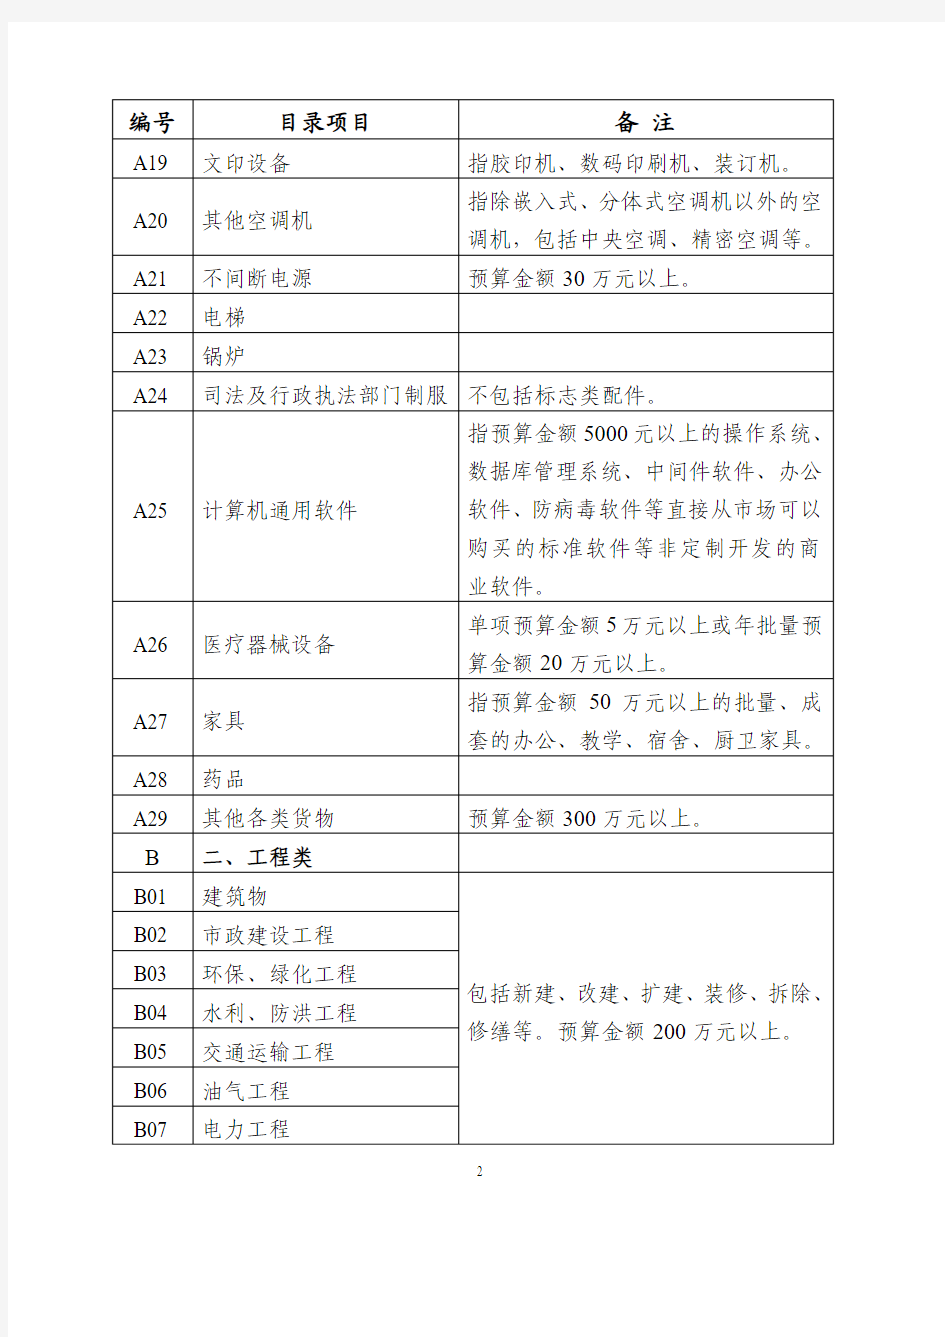 上海市2011年政府采购集中采购目录和采购限额标准